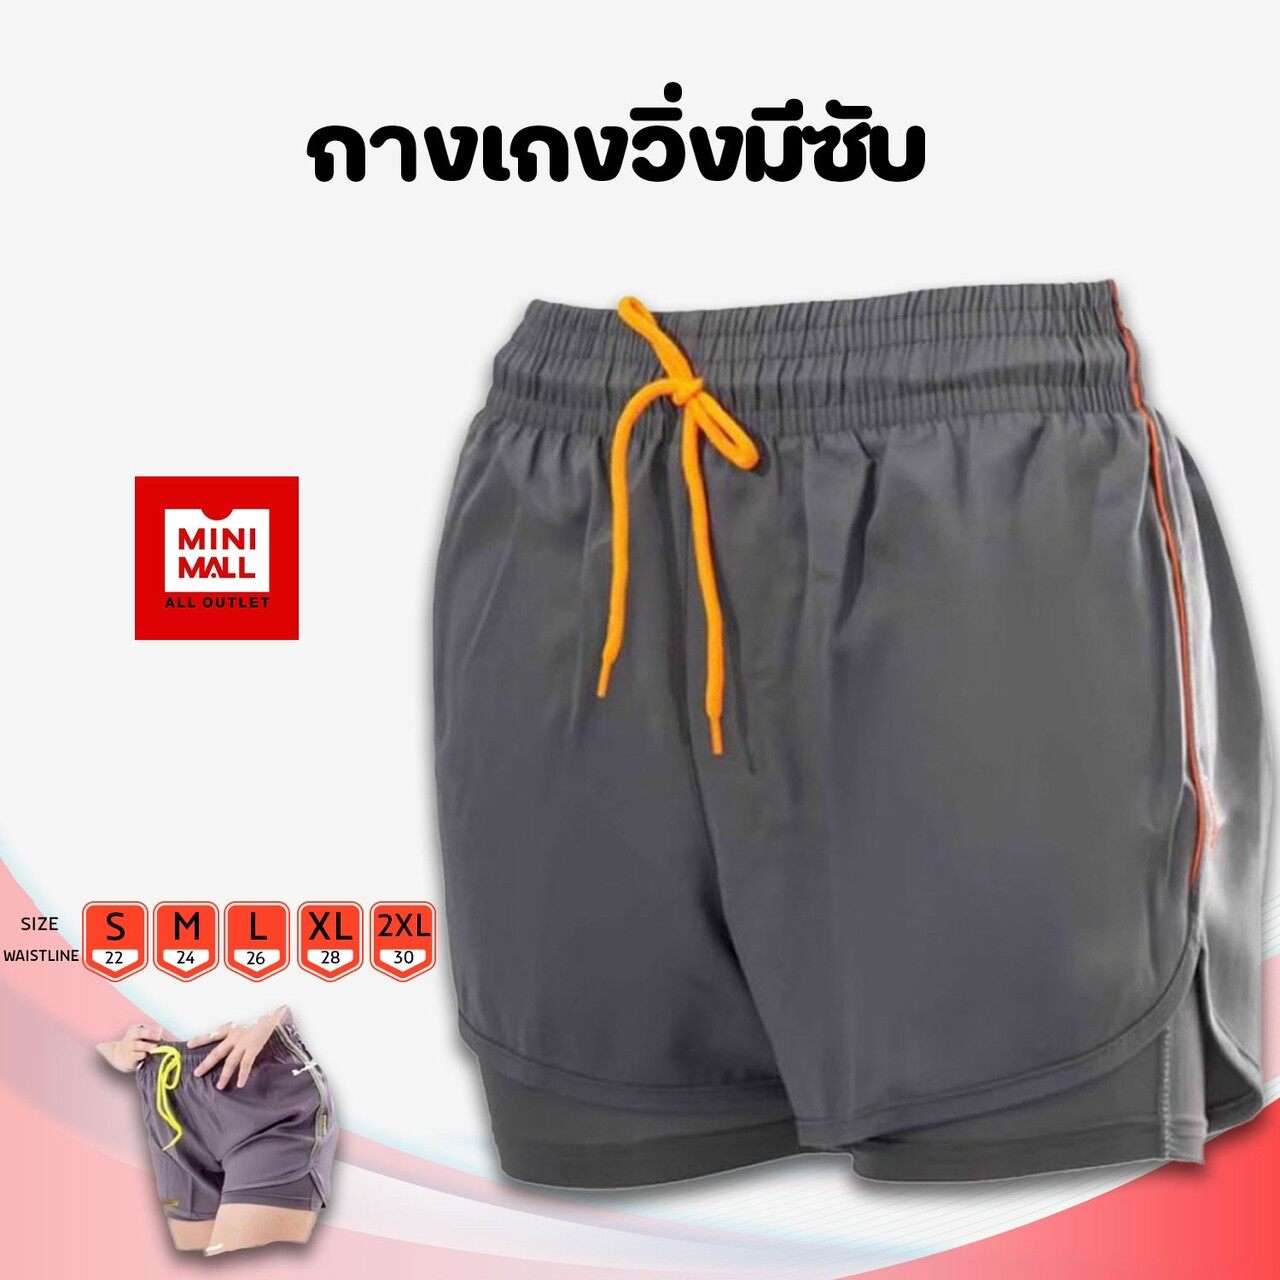 Pants - Buy Pants at Best Price in Myanmar